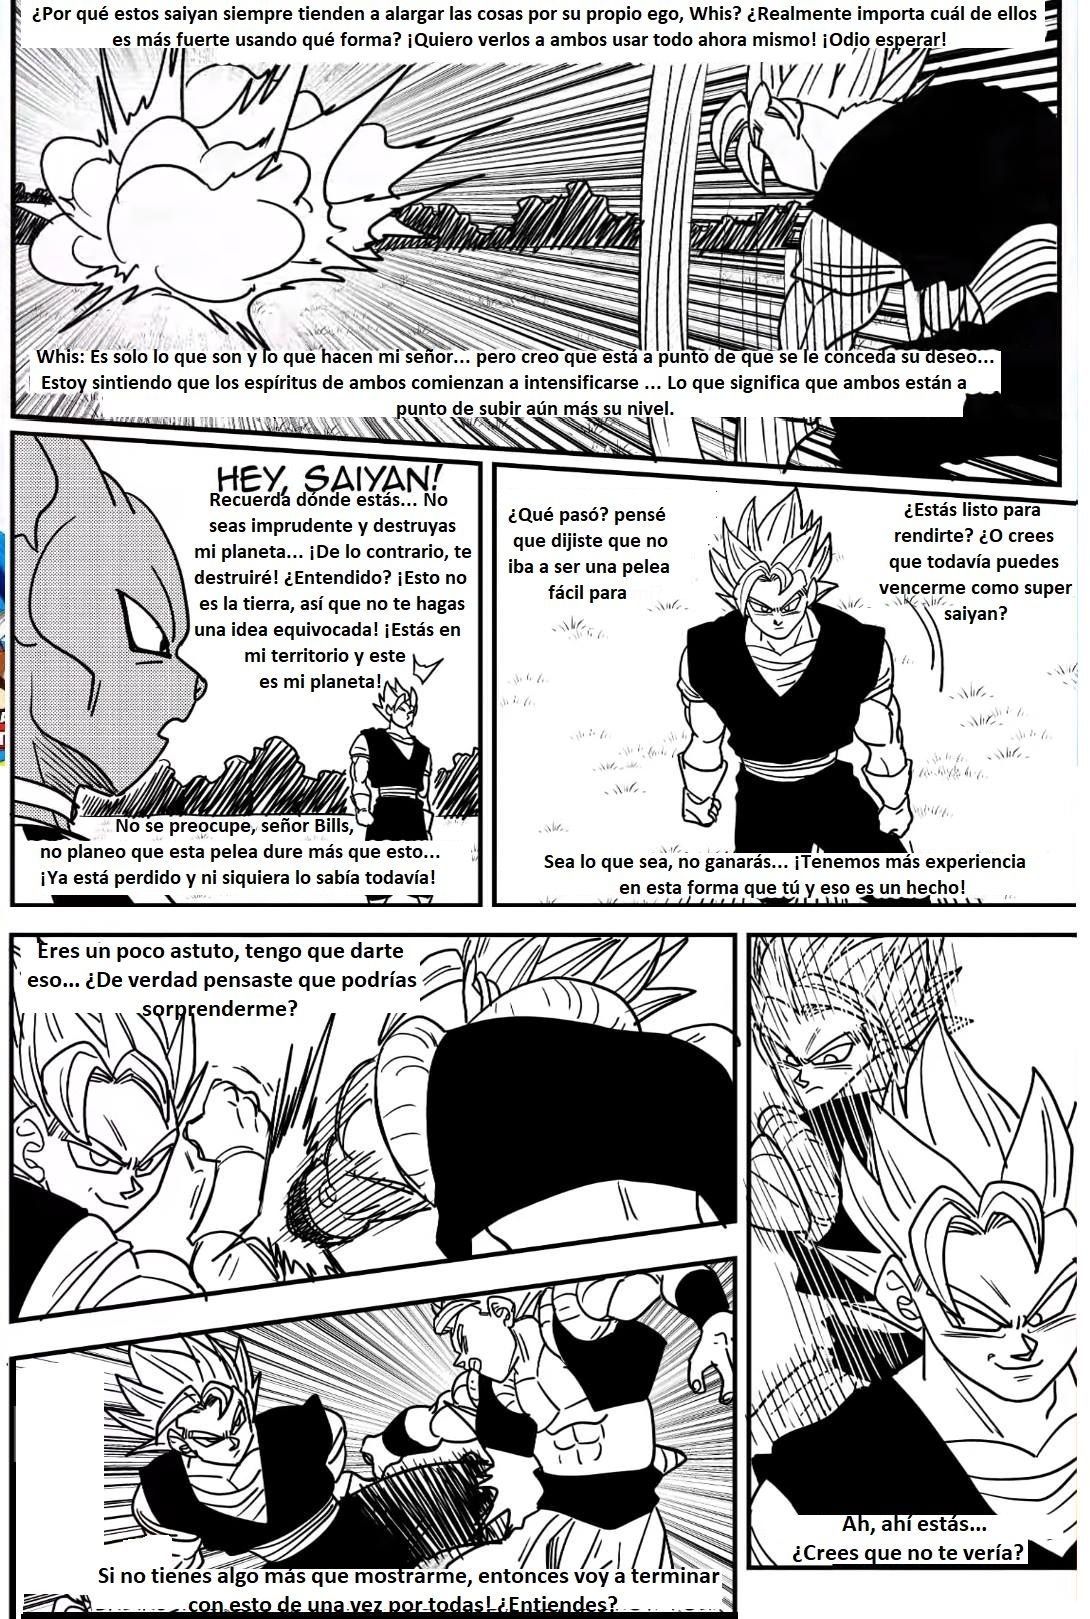 Beyond Dragon Ball Super: Gogeta And Vegito Meet! Vegito Mocks Gogeta! The Battle Of Fusions Begins! 13